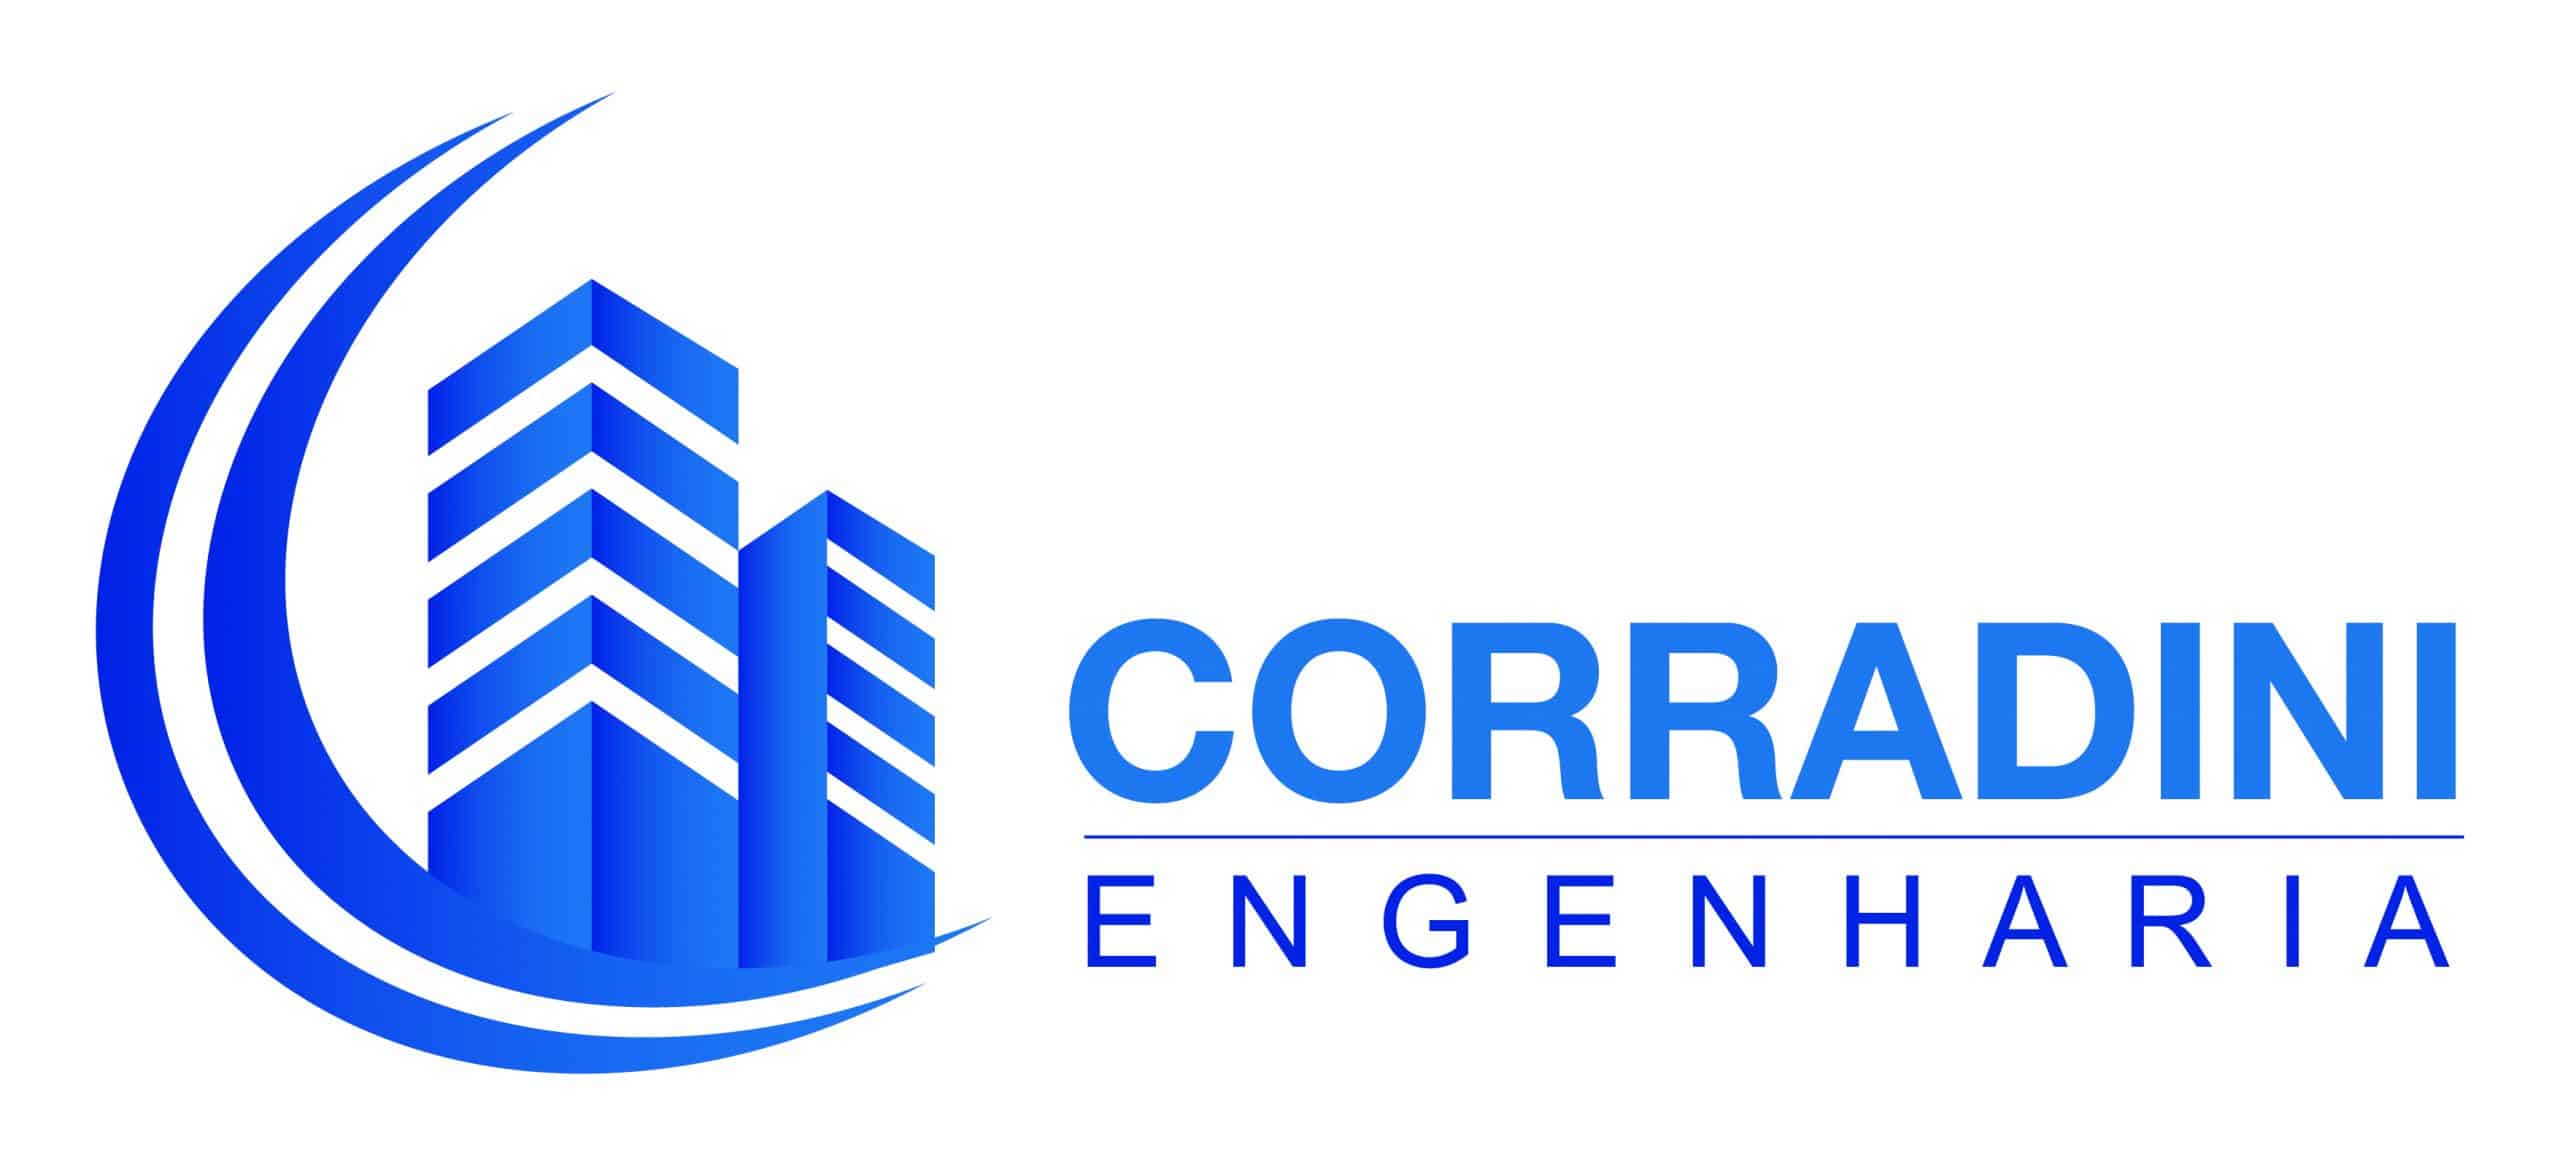 Corradini_Engenharia_logo